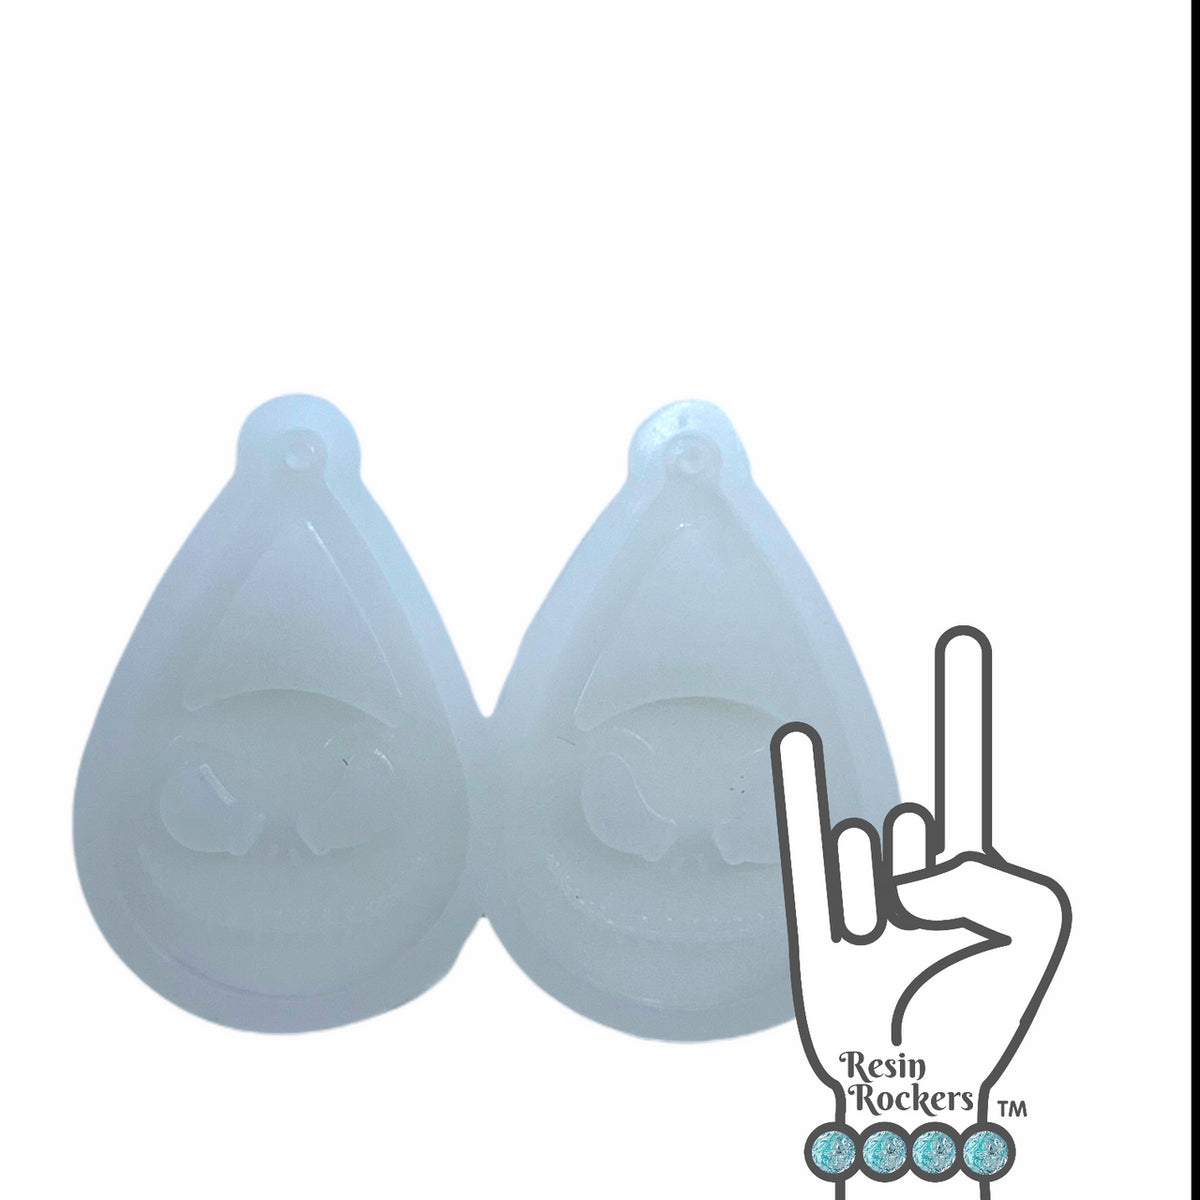 UV Safe Jack Inspired Dangle Earring Mold for UV and Epoxy Resin Art